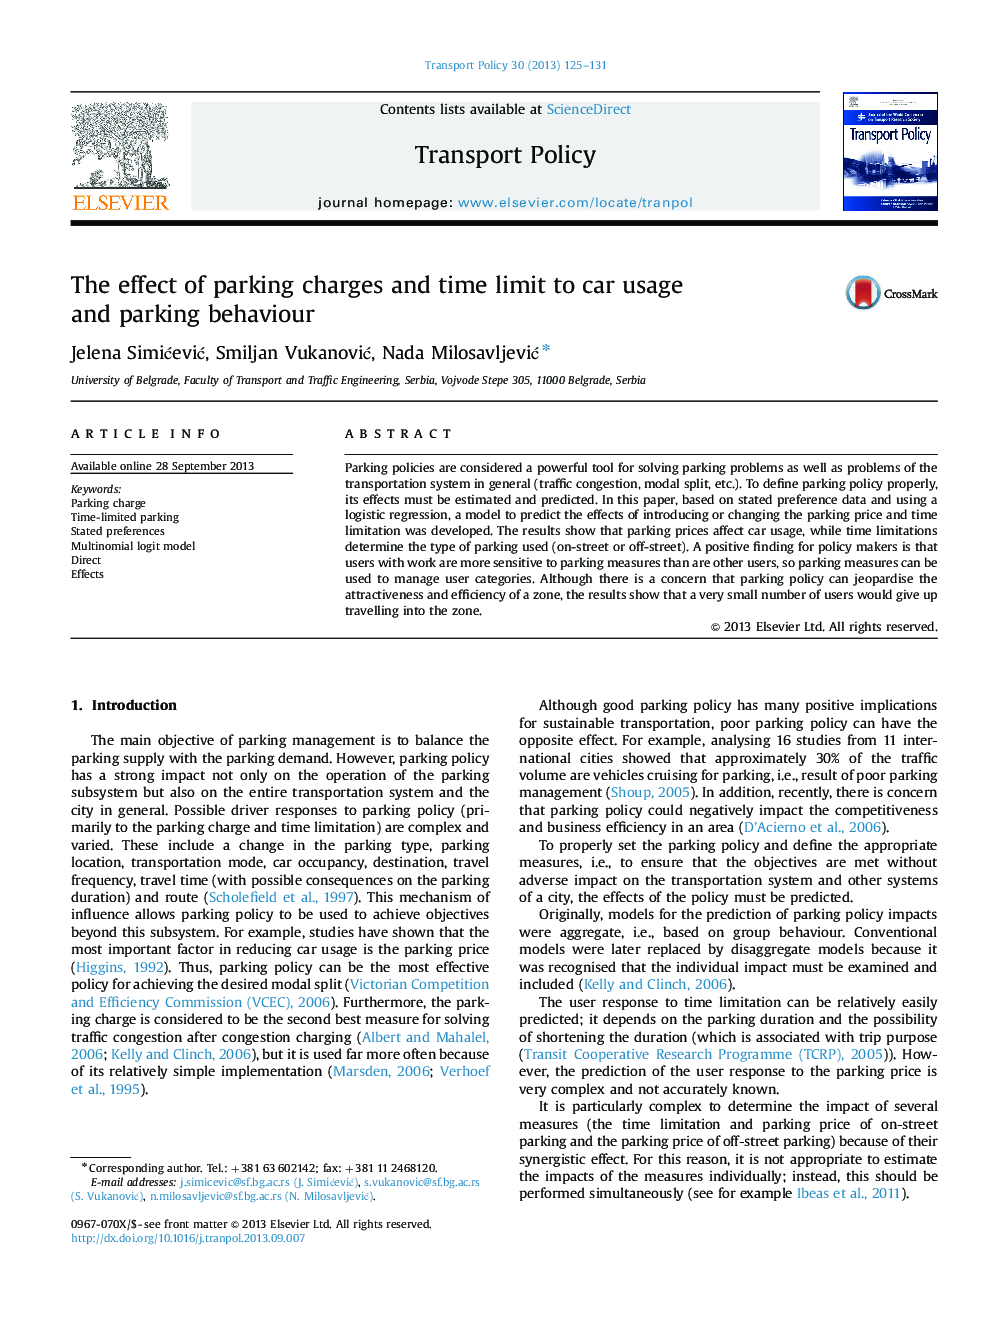 اثر هزینه های پارکینگ و محدودیت زمانی به استفاده از ماشین و رفتار پارکینگ 